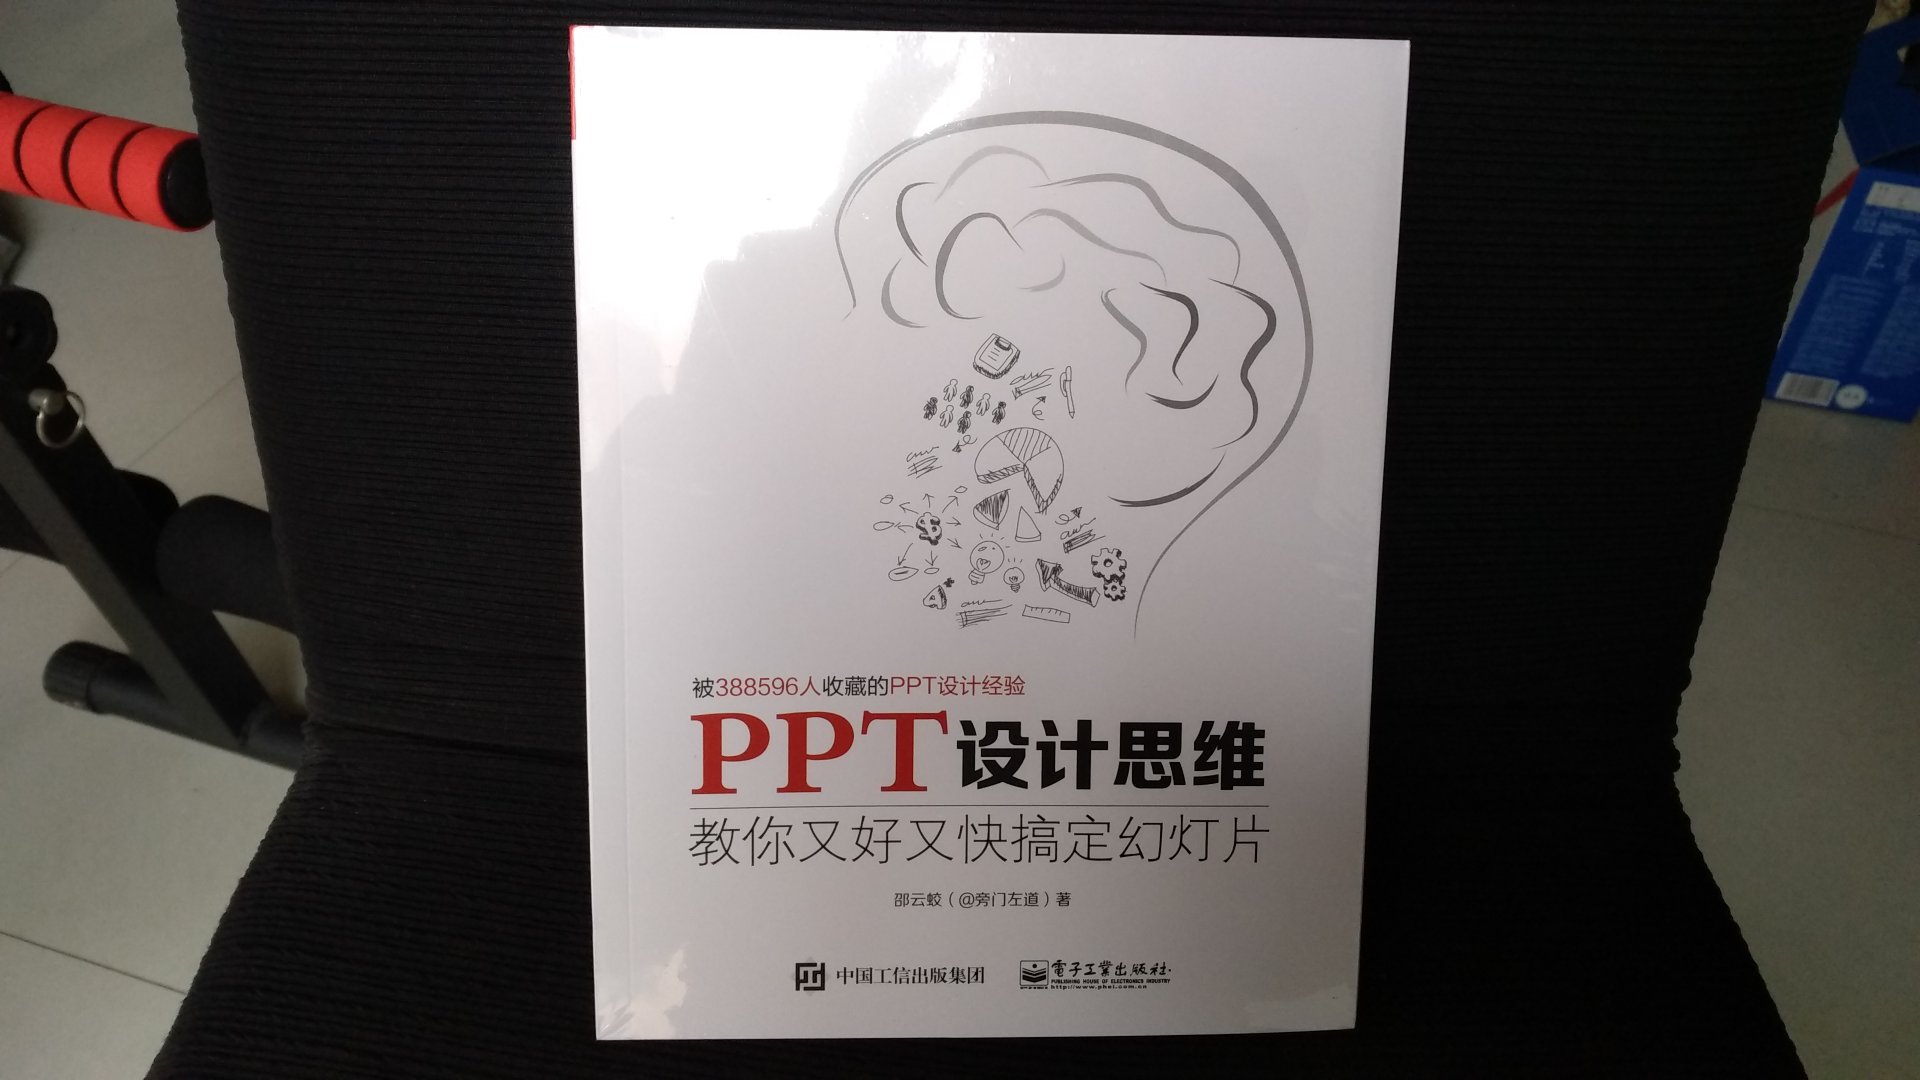 非常好的一本书，对我学习PPT有很大帮助。